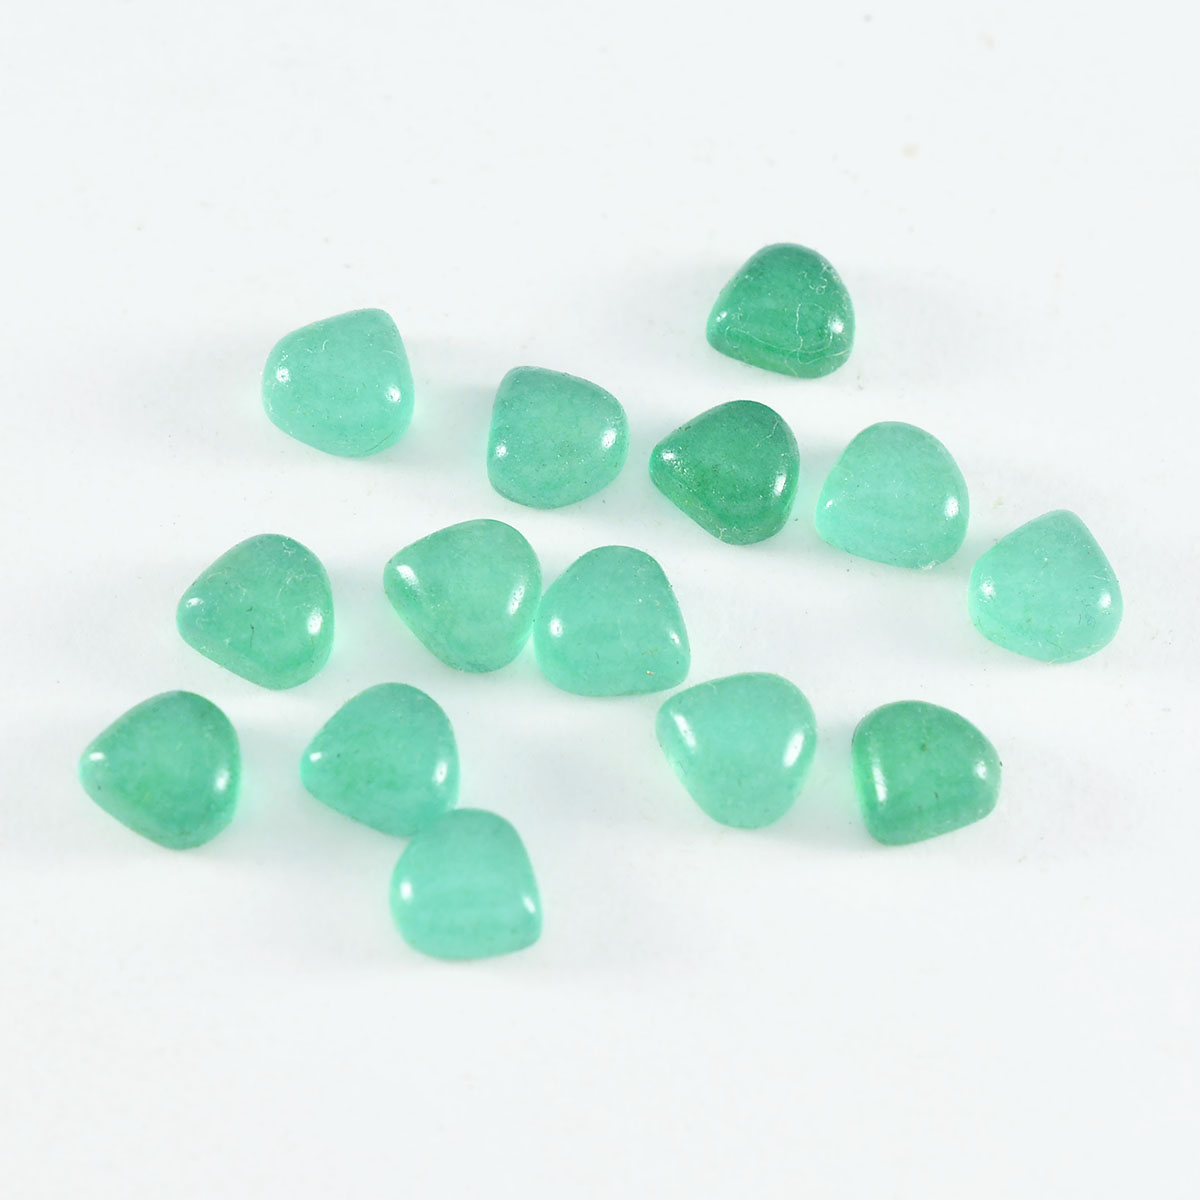 Riyogems 1pc cabochon onyx vert 4x4 mm en forme de coeur jolie pierre précieuse en vrac de qualité